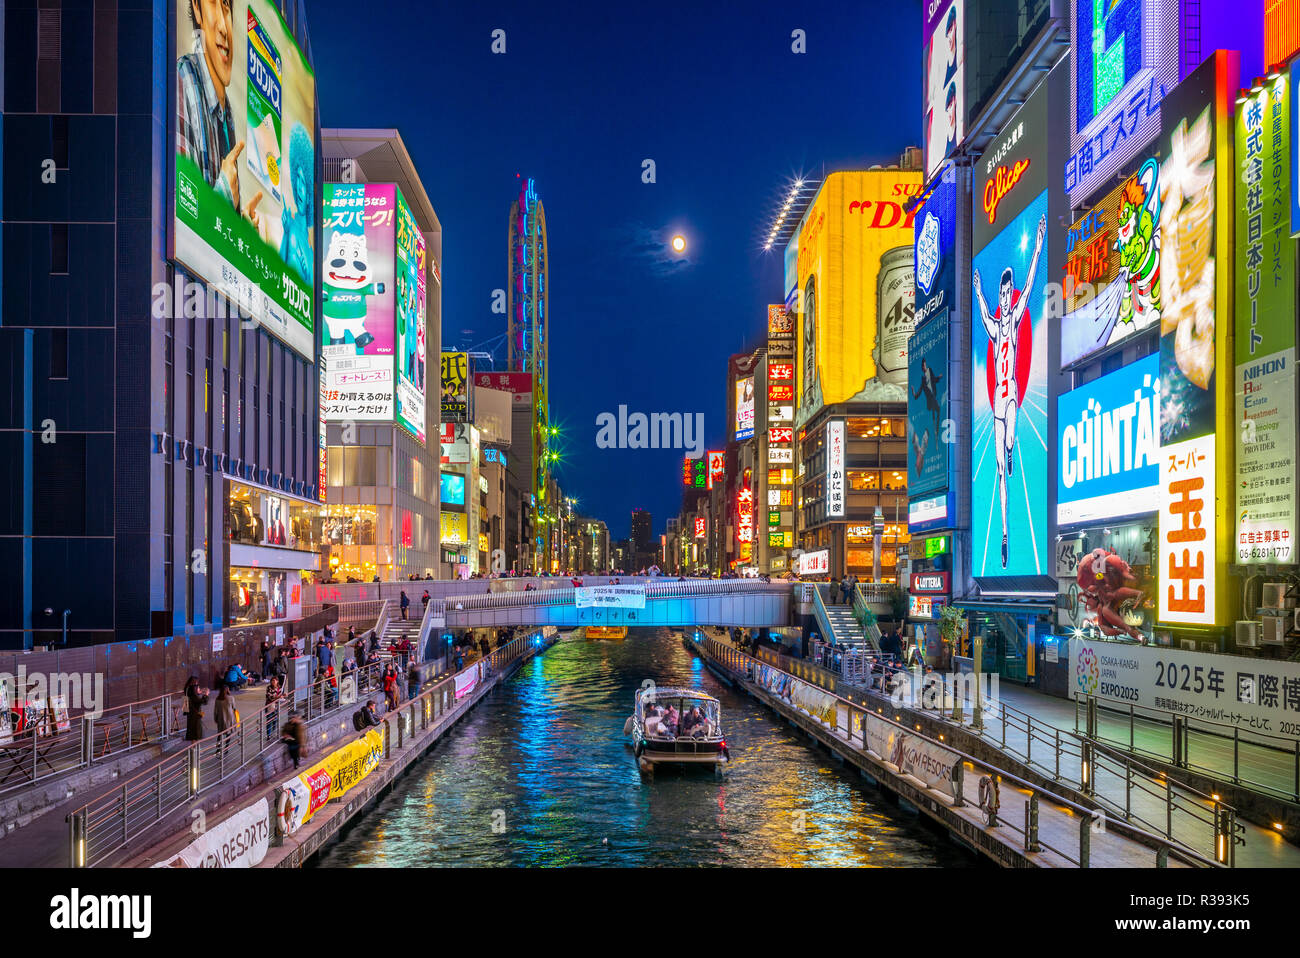 Osaka, Japan - 21. November 2018: Nacht Dotonbori, einer der wichtigsten touristischen Destinationen in Osaka entlang der Dotonbori Kanal von Dotonboribashi Bri Stockfoto